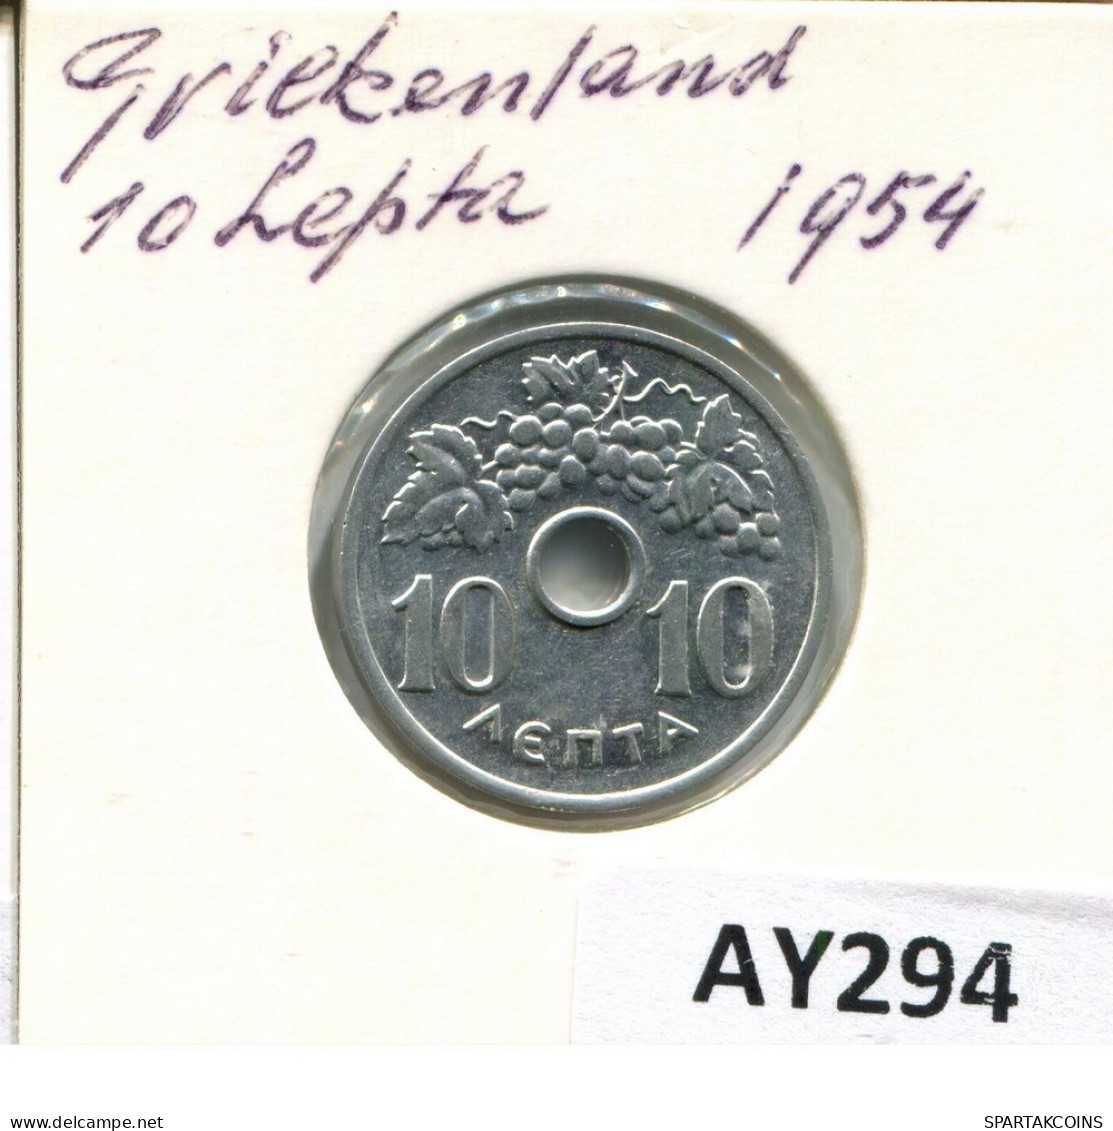 10 LEPTA 1954 GREECE Coin #AY294.U.A - Greece